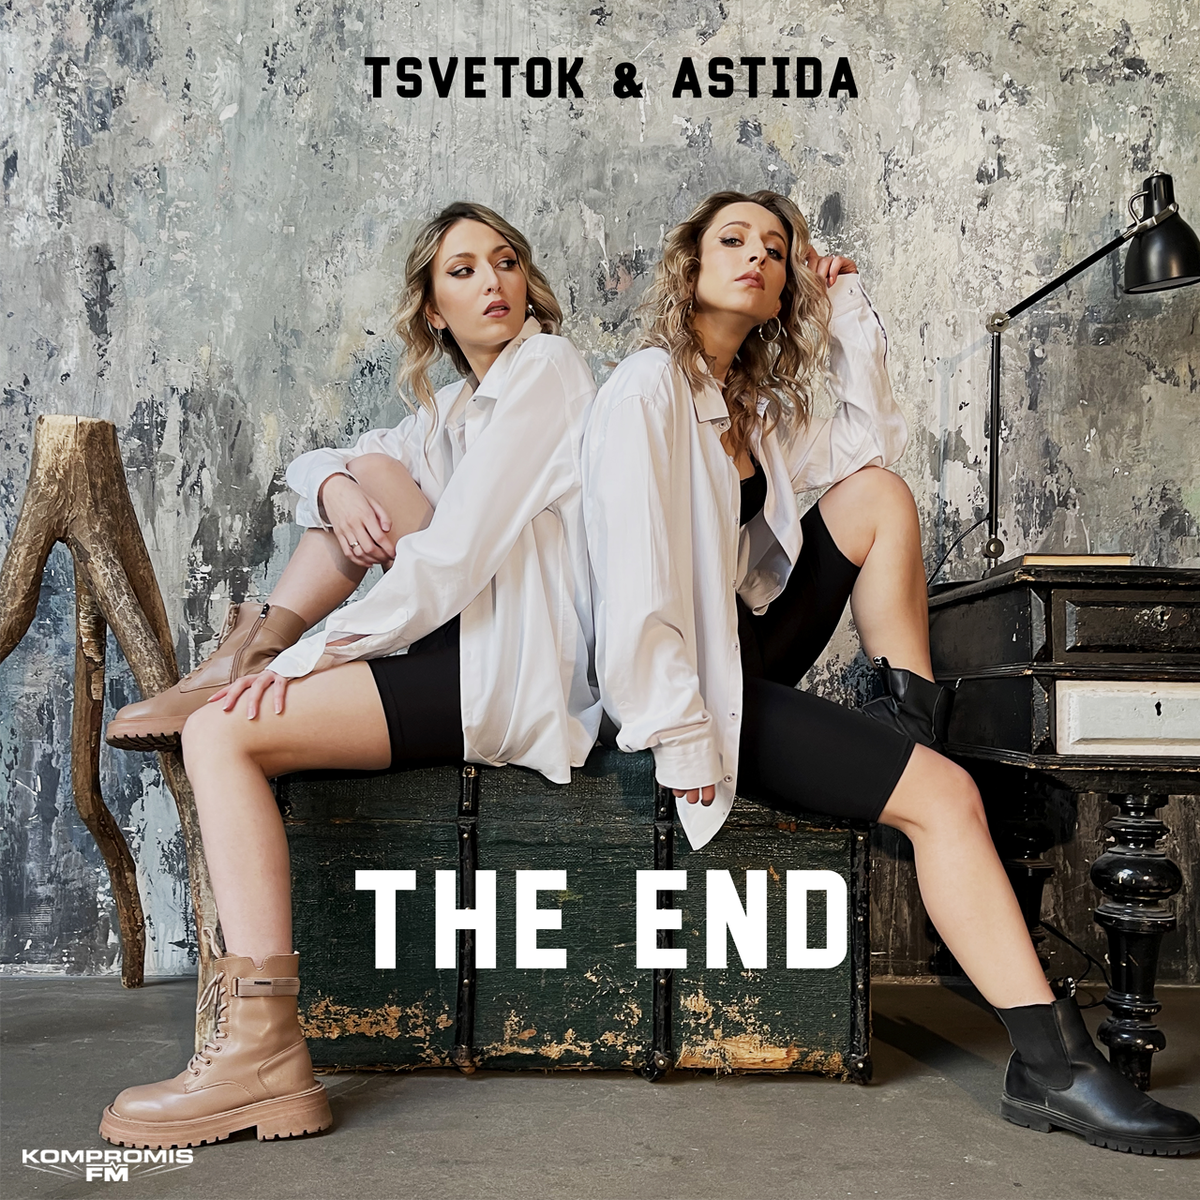 Новинка! 🔥

ASTIDA и TSVETOK с песней «THE END» в ротации радио KOMPROMIS FM. 📻

Женский дуэт ASTIDA & TSVETOK это две разные личности с общим прошлым.